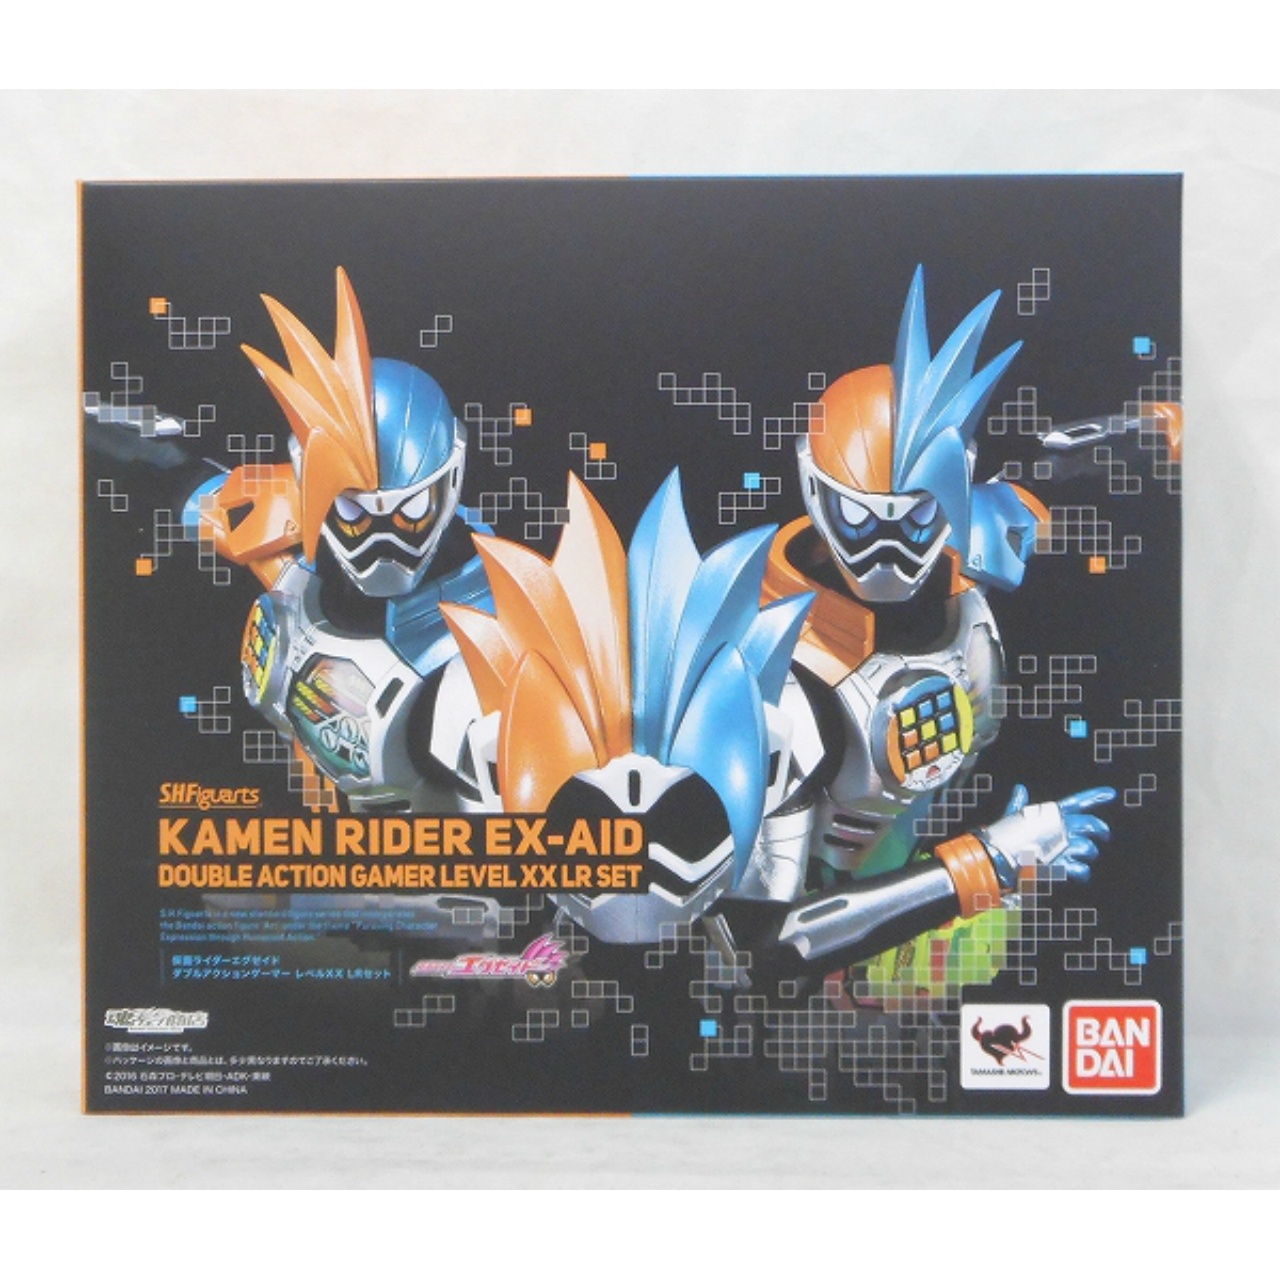 S.H.Figuarts Kamen Rider Ex-Aid Double Action Gamer Level XX LR Set